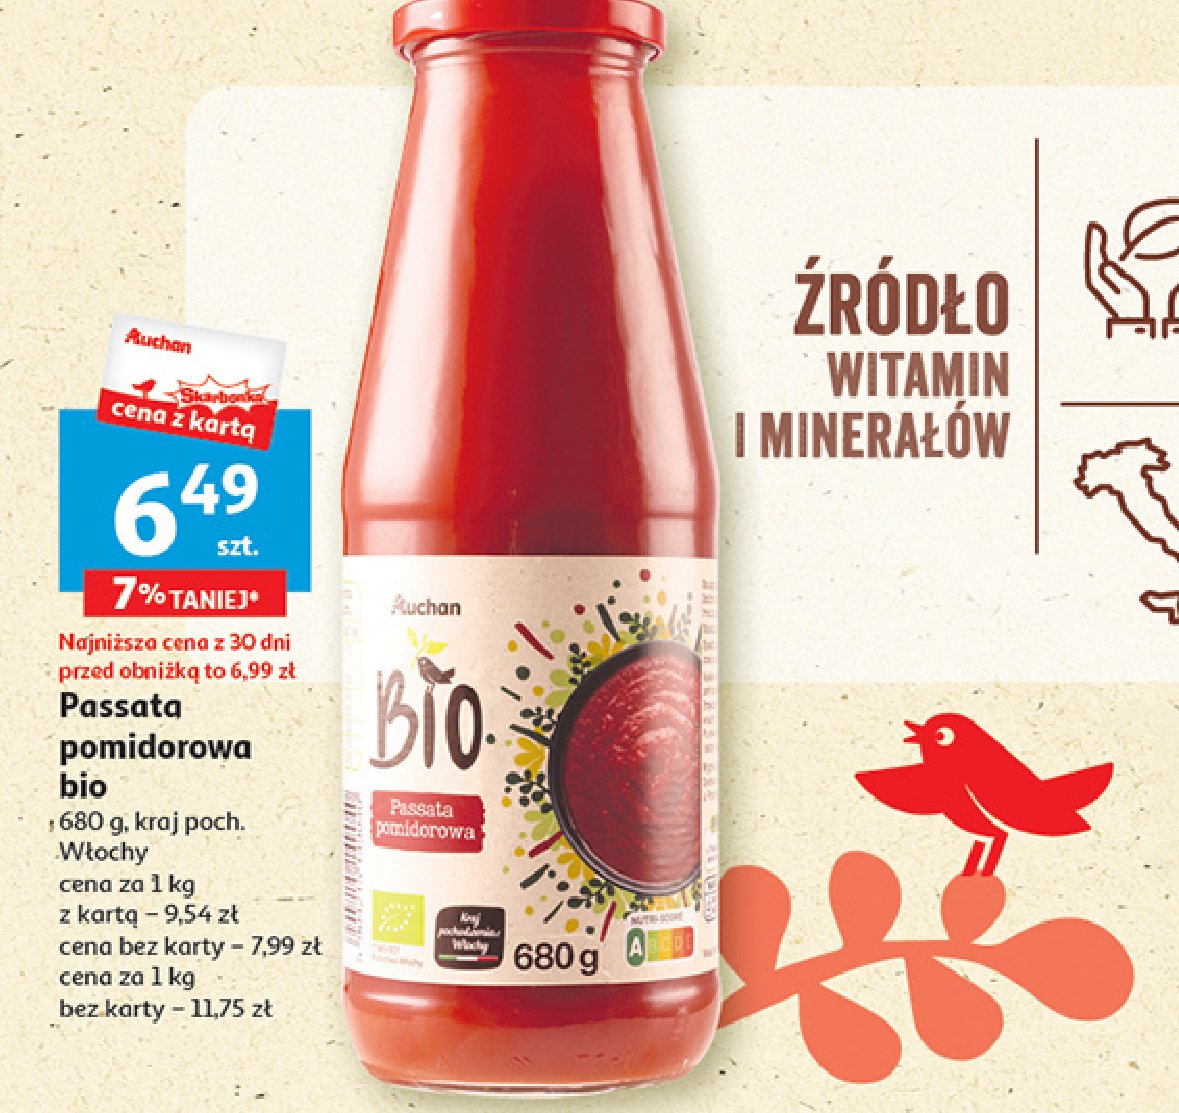 Passata pomidorowa bio Auchan różnorodne (logo czerwone) promocja